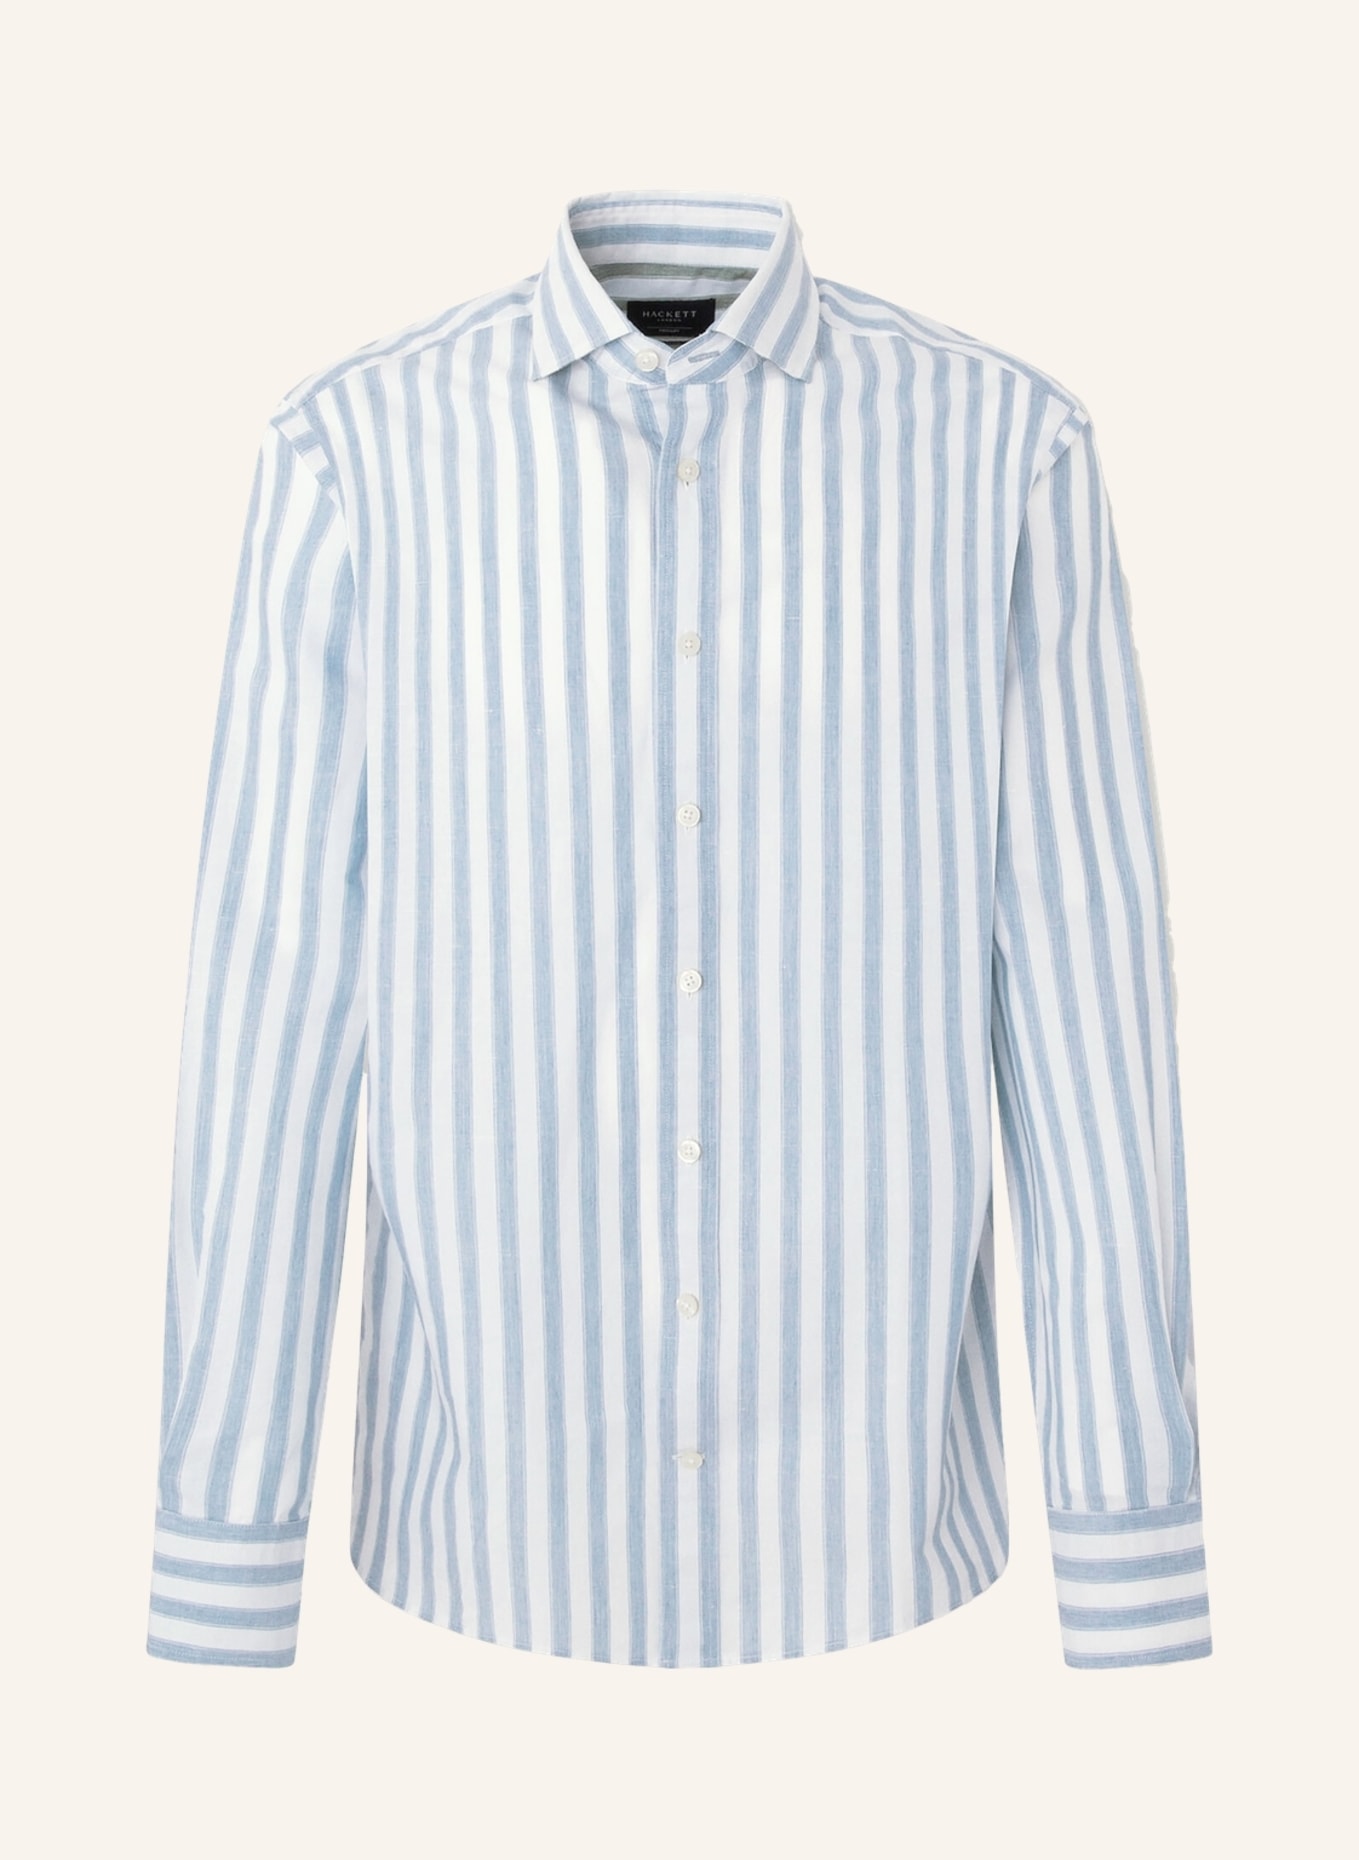 HACKETT LONDON Hemd MEL Slim Fit mit Leinen, Farbe: BLAU/ WEISS (Bild 1)